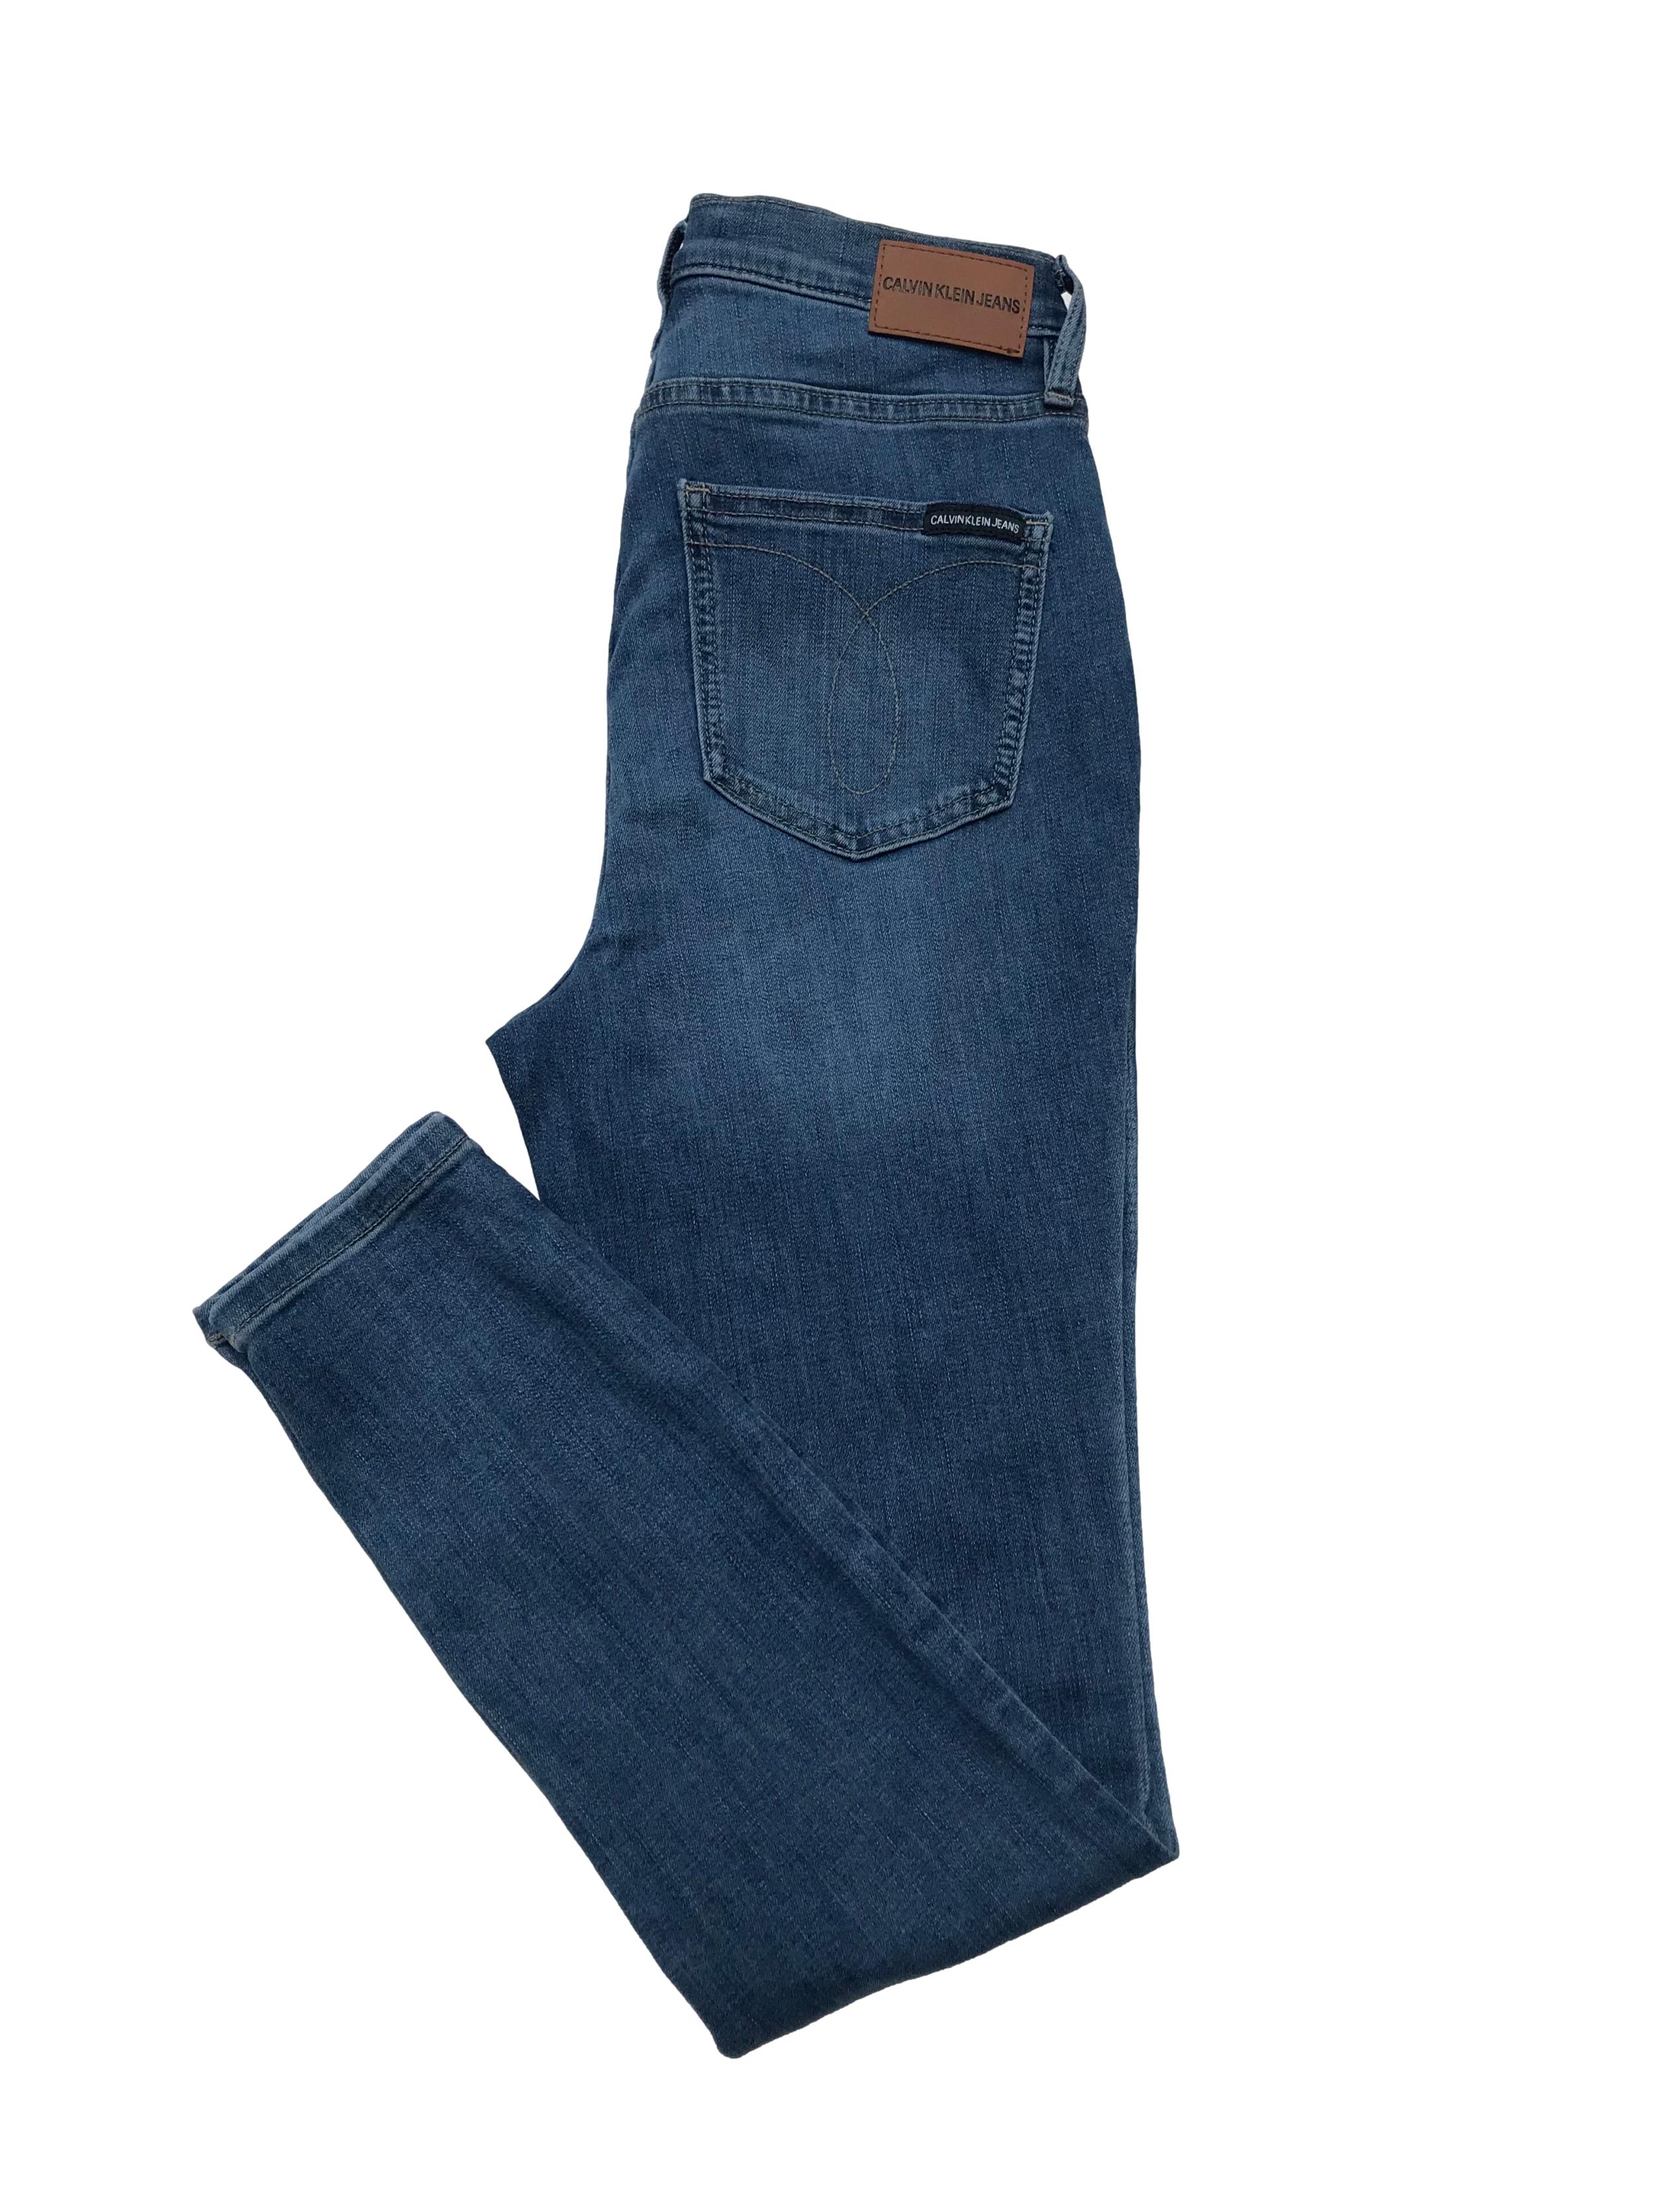 Skinny jean Calvin Klein Jeans a la cintura, stretch. Cintura 70cm Largo 95cm. Precio original S/ 379